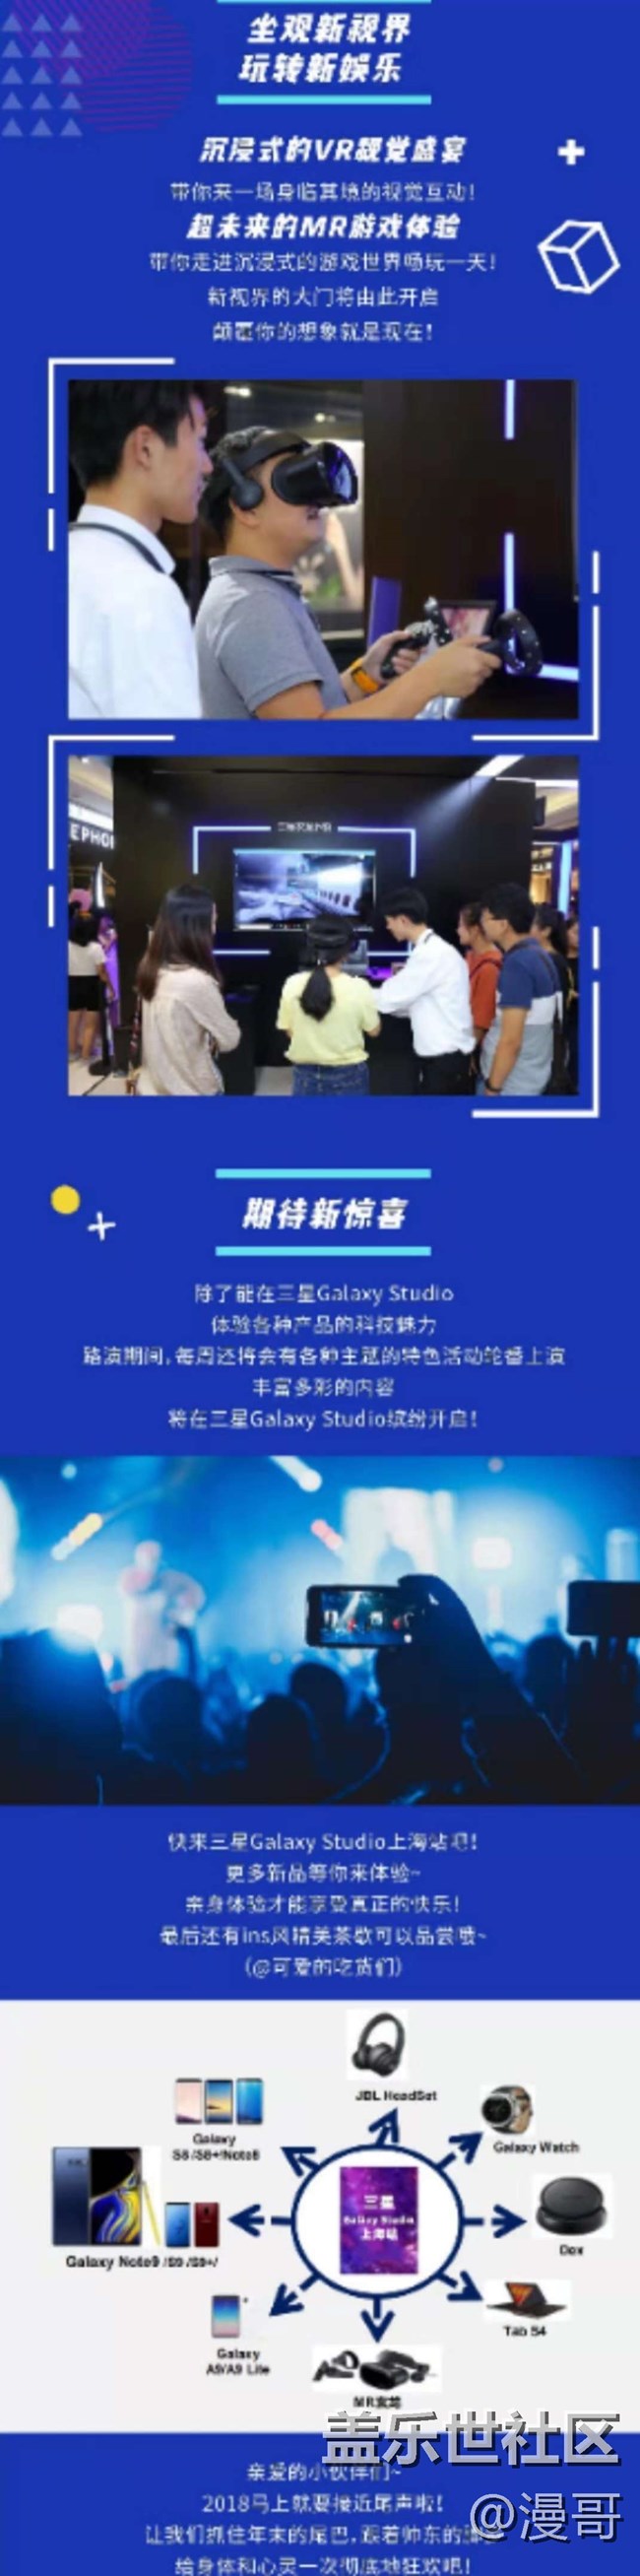 三星盖乐世上海星部落 12月1日Galaxy Studio体验活动